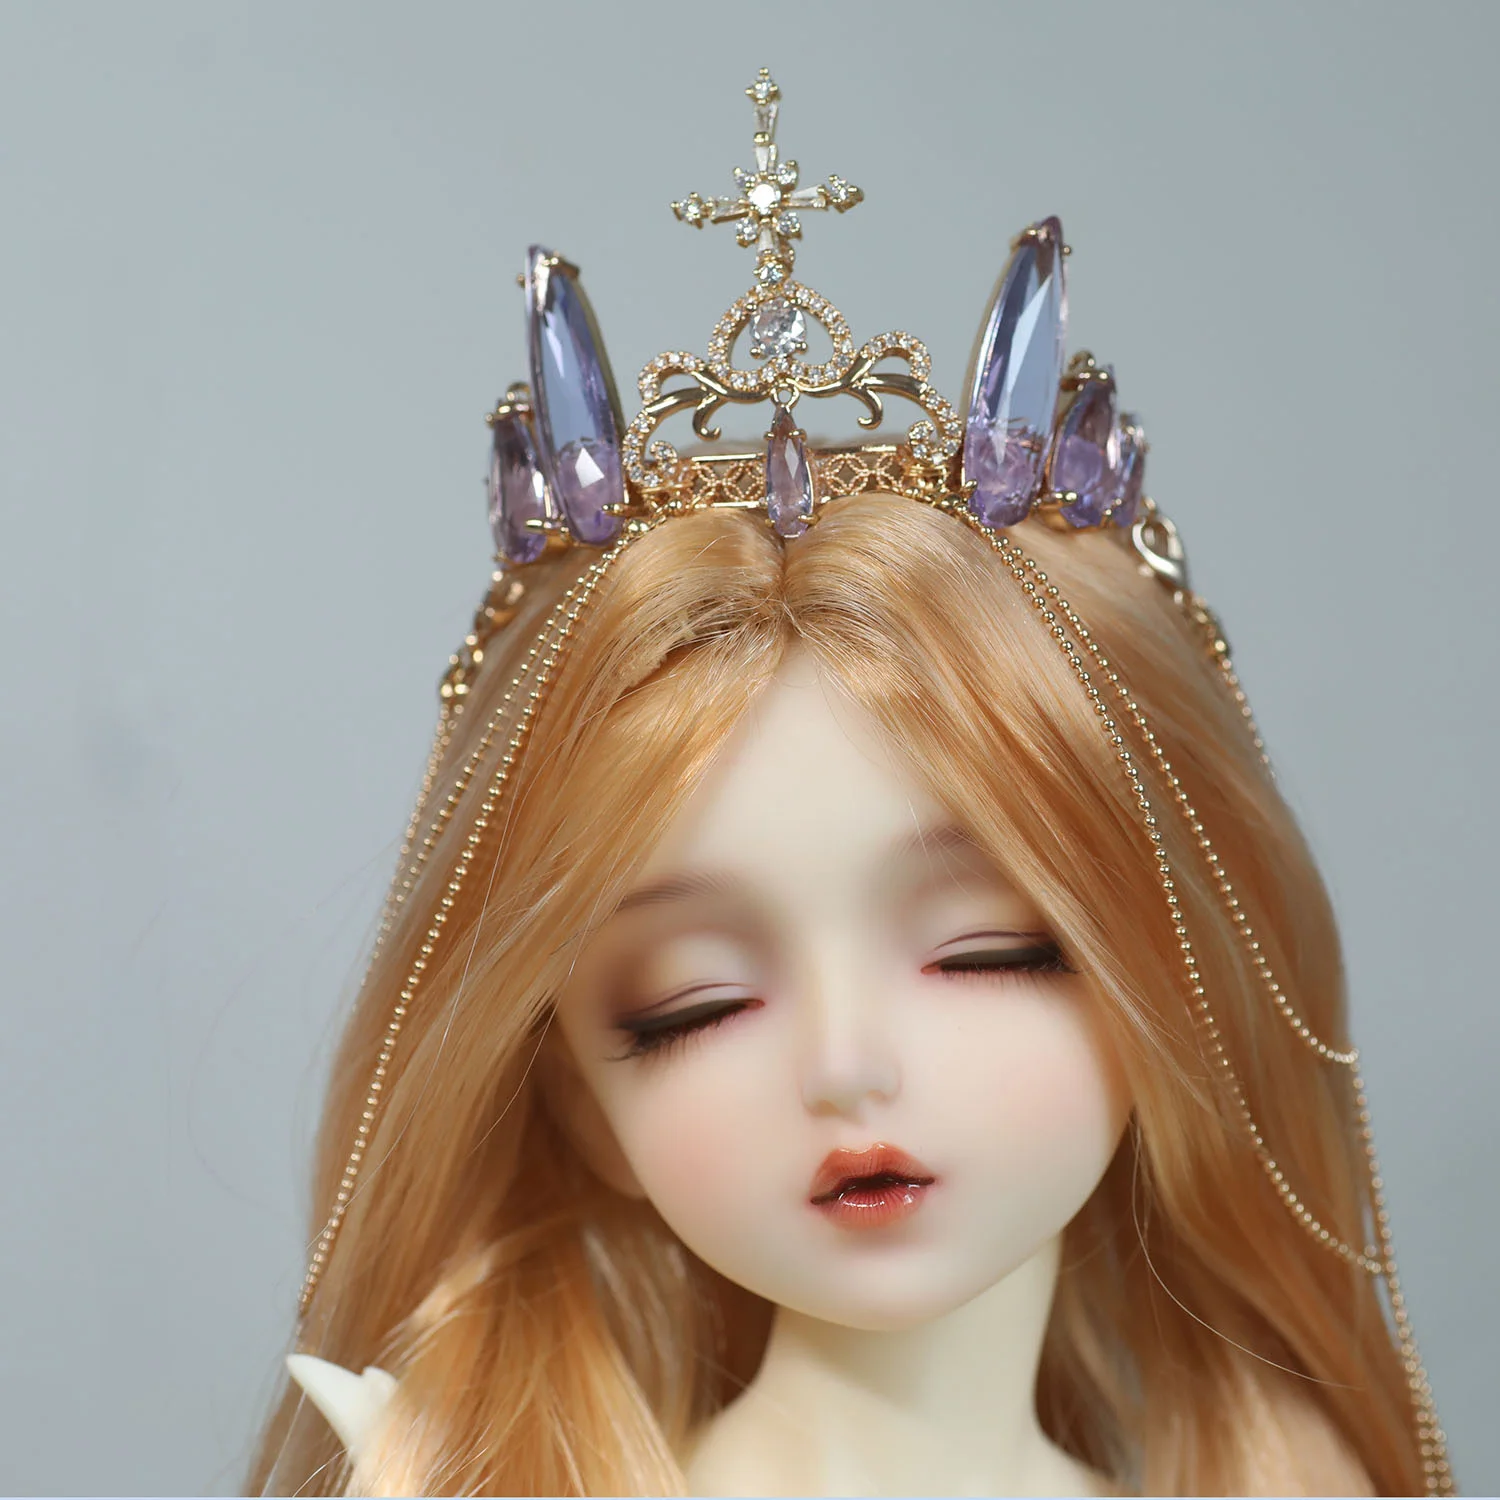 Аксесоари за кукли BJD за 1/3 от 1/4 от размера на чичо си, кукла bjd със седалище убором под формата на короната, превръзка от неопрен за коса, аксесоари за кукли във формата на корона (индивидуални) Изображение 0 